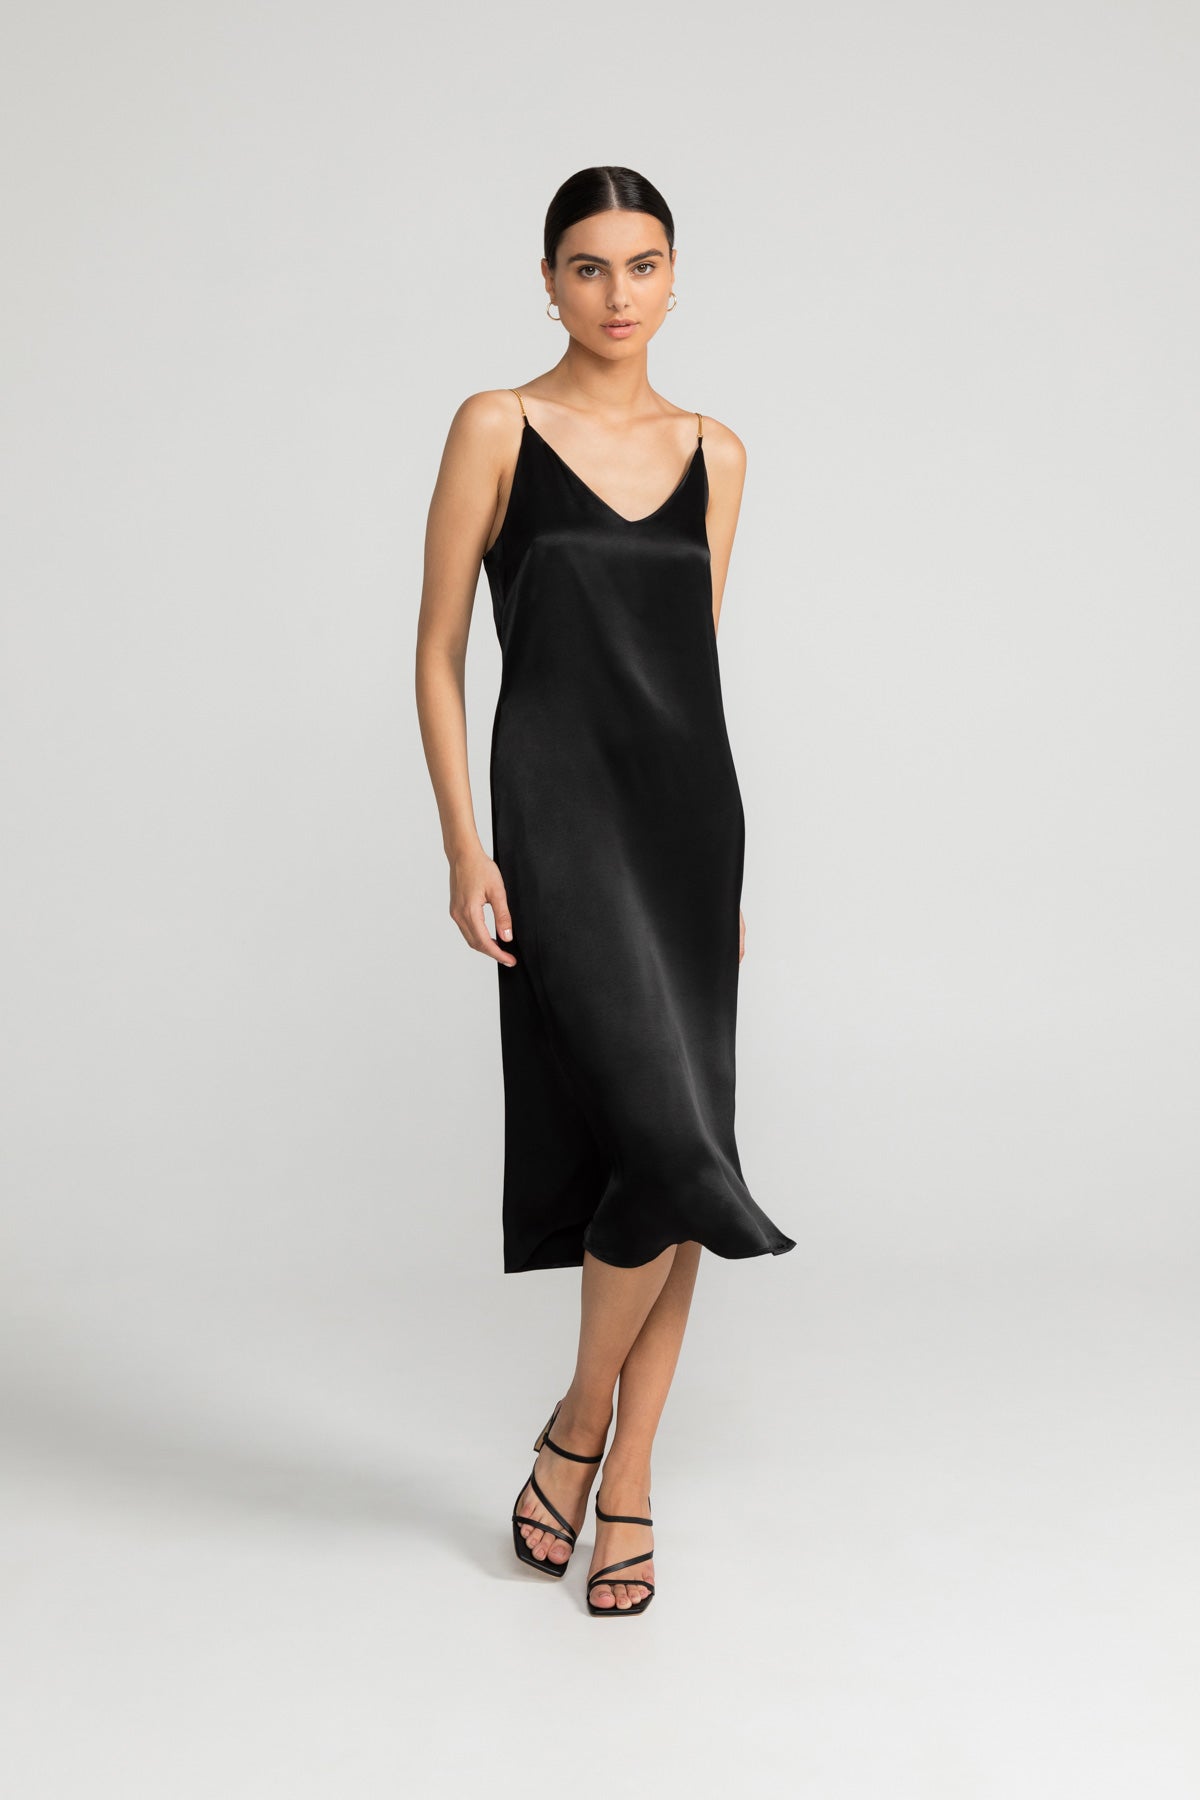 Kleid ELANIE in schwarz von LOVJOI aus nachhaltiger ENKA® Viskose und ECOVERO™